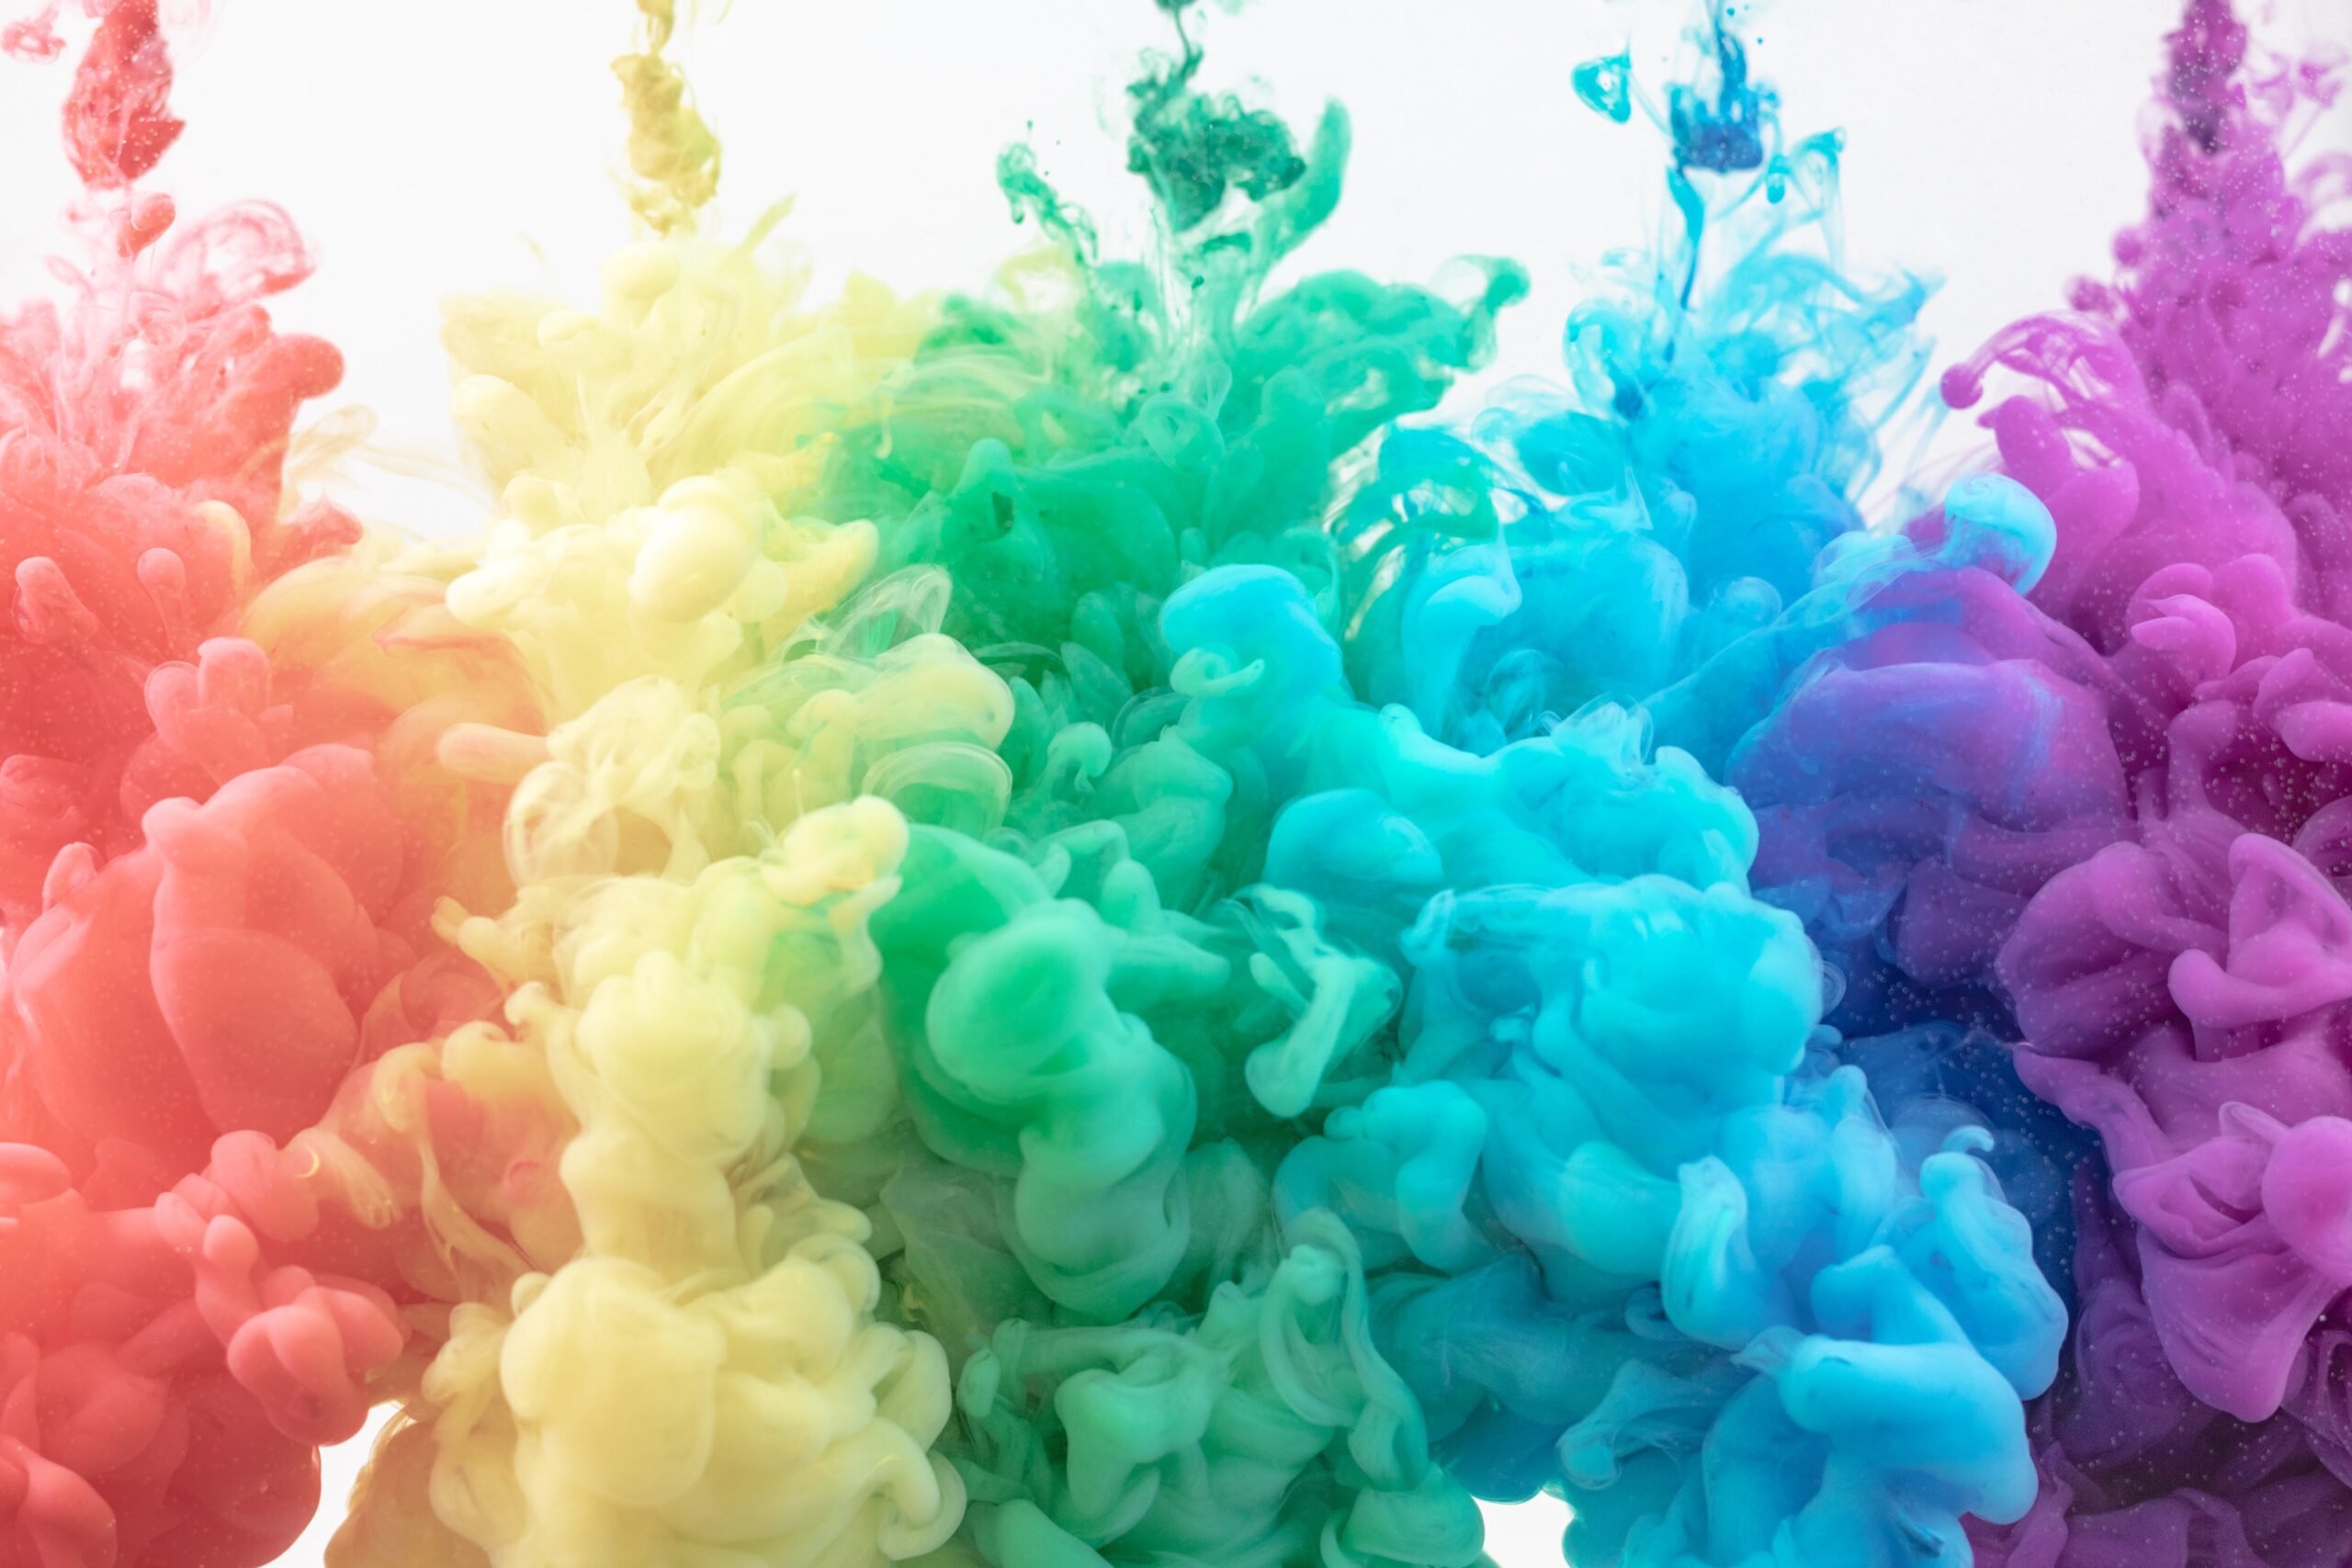 色と色彩心理学の基礎知識 効果的なデザインの配色方法 Grab 大阪のweb広告 マーケティング代理店アイビス運営